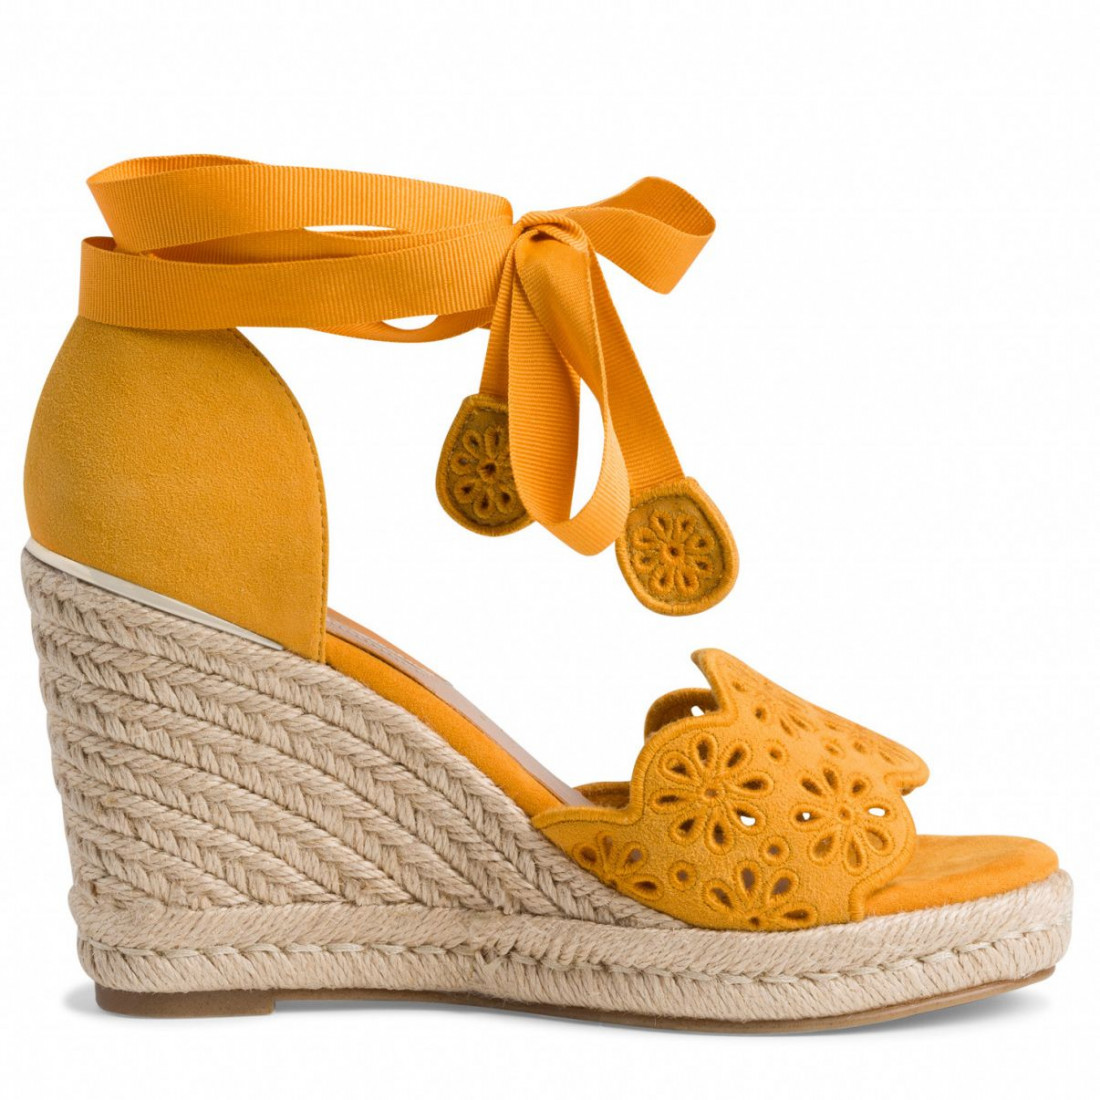 Tamaris wedge sandals in yellow suede